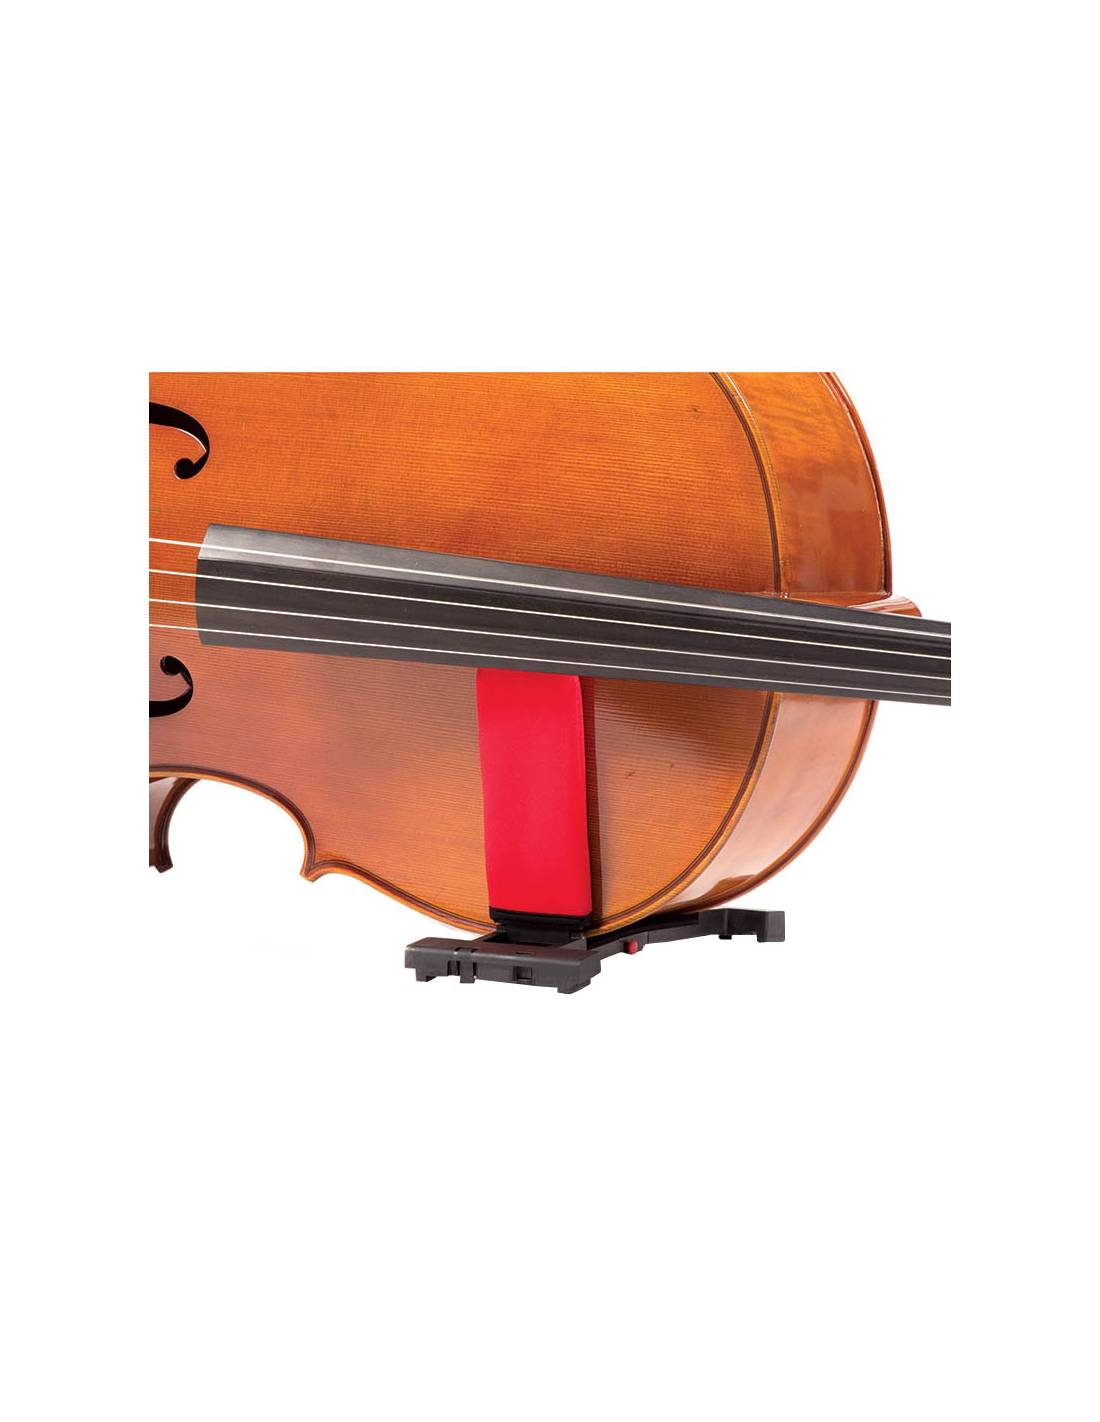 Support pour violoncelle - Support de guitare - Support de violoncelle -  Robuste et pliable et durable - Accessoire pour instruments de musique FL -  14 : : Instruments de musique